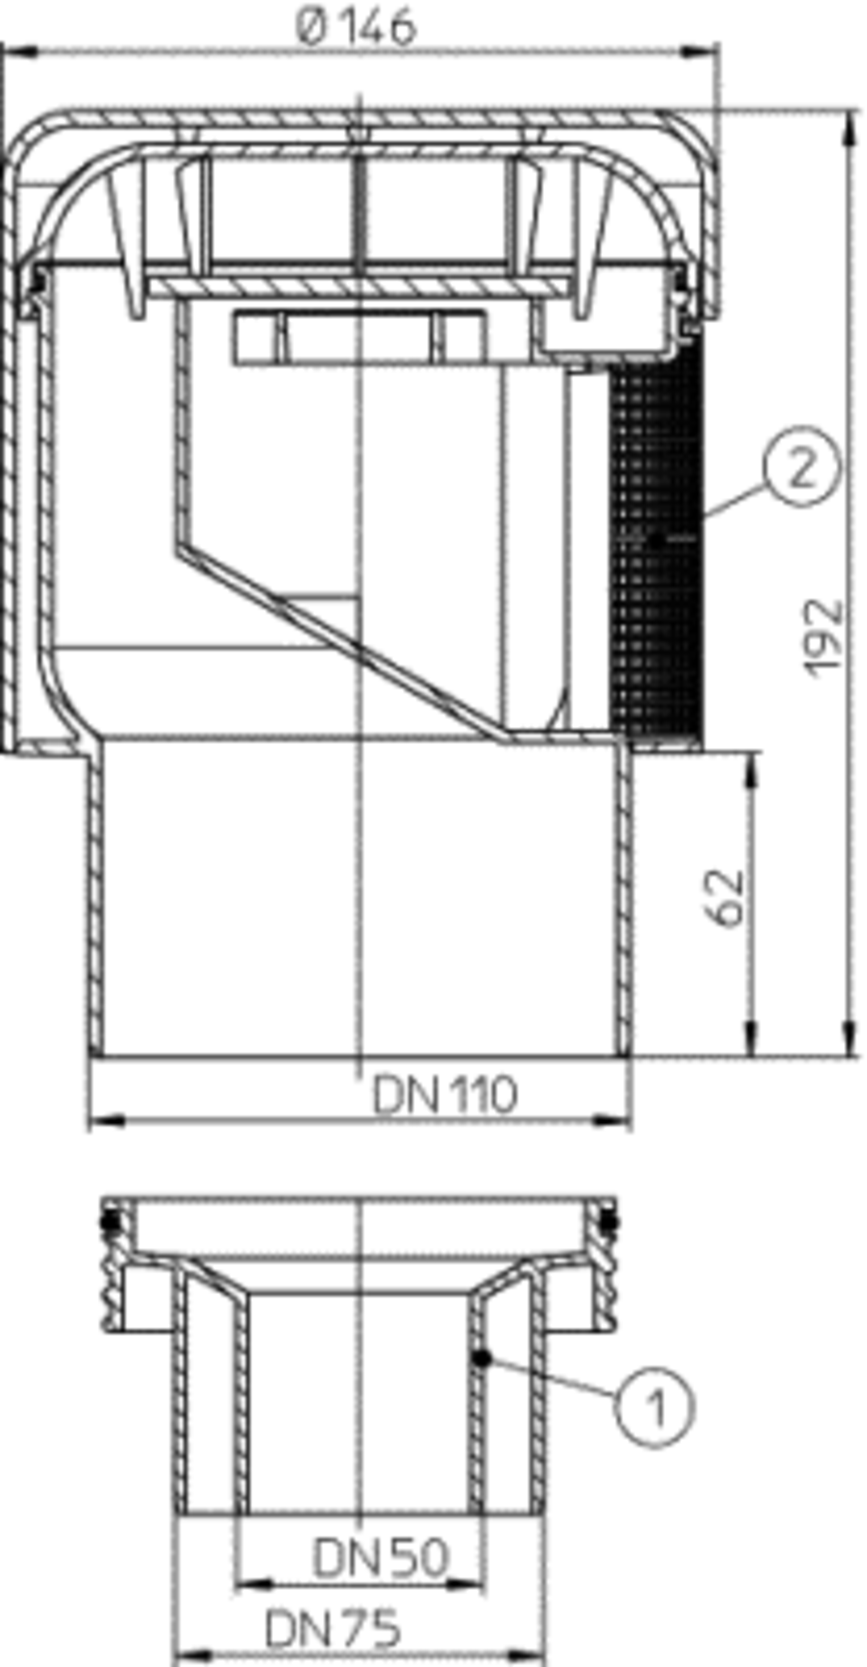 Pagina 1 - CAD-PDF Aerator cu membrana pentru ventilarea sistemelor de canalizari interioare - Desen...